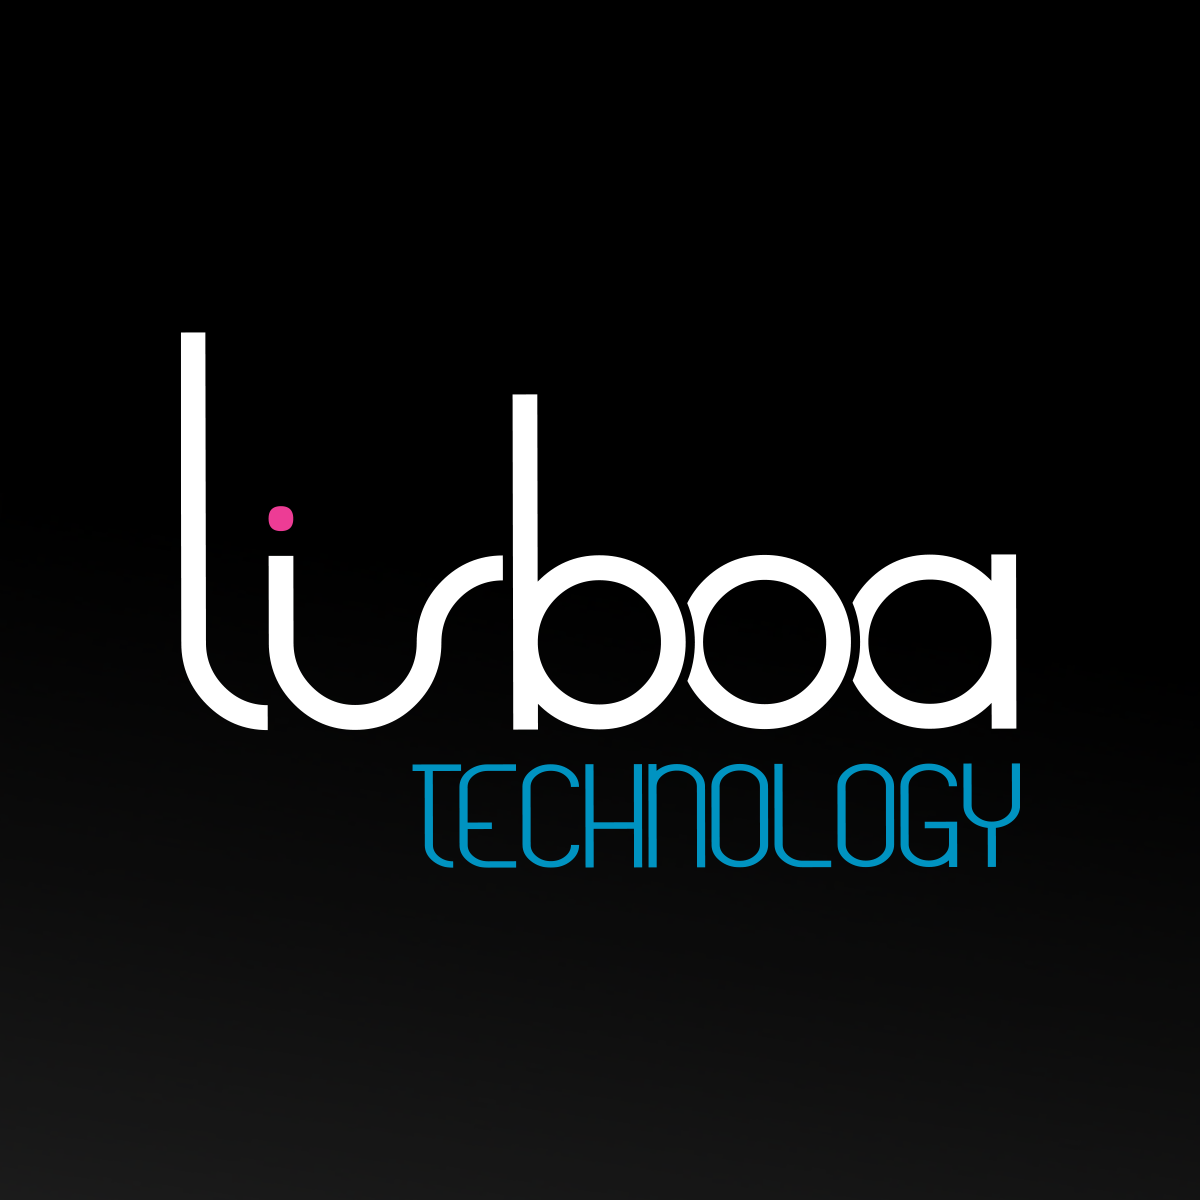 LISBOA TECHNOLOGY